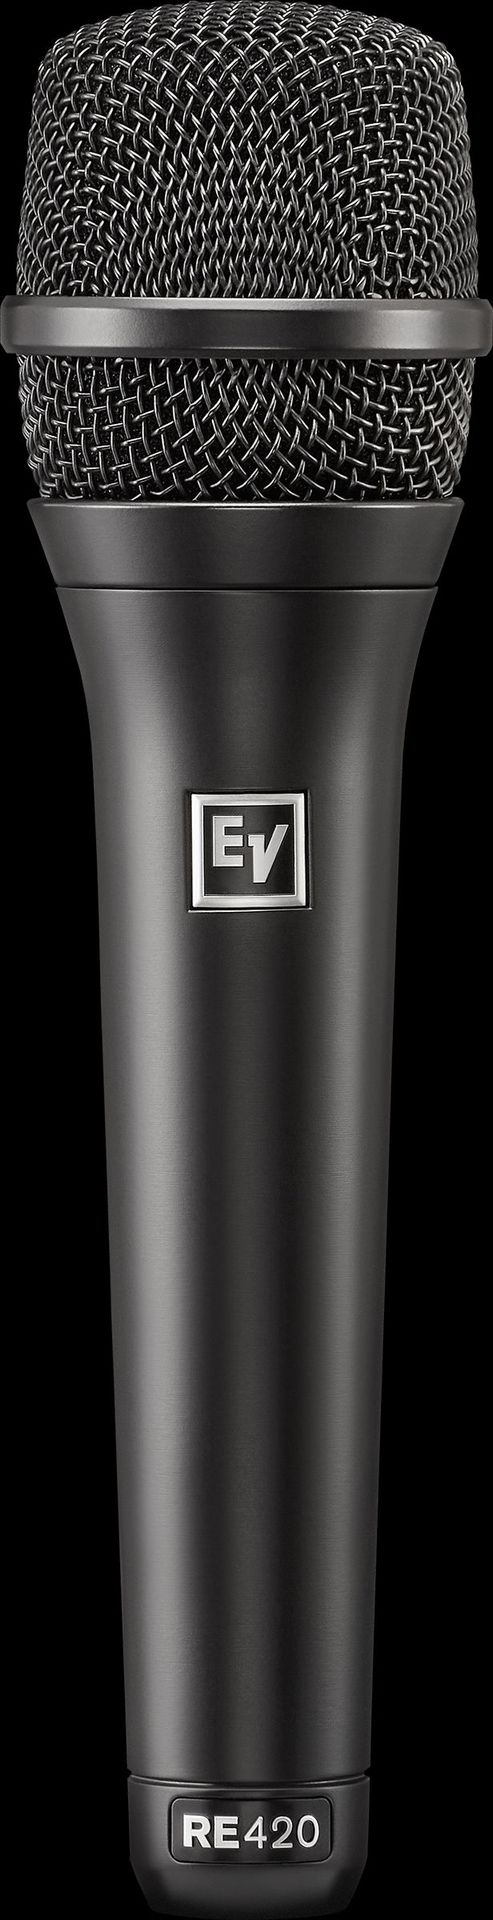 Electro Voice EV RE420 Kondensator Gesangsmikrofon Niere